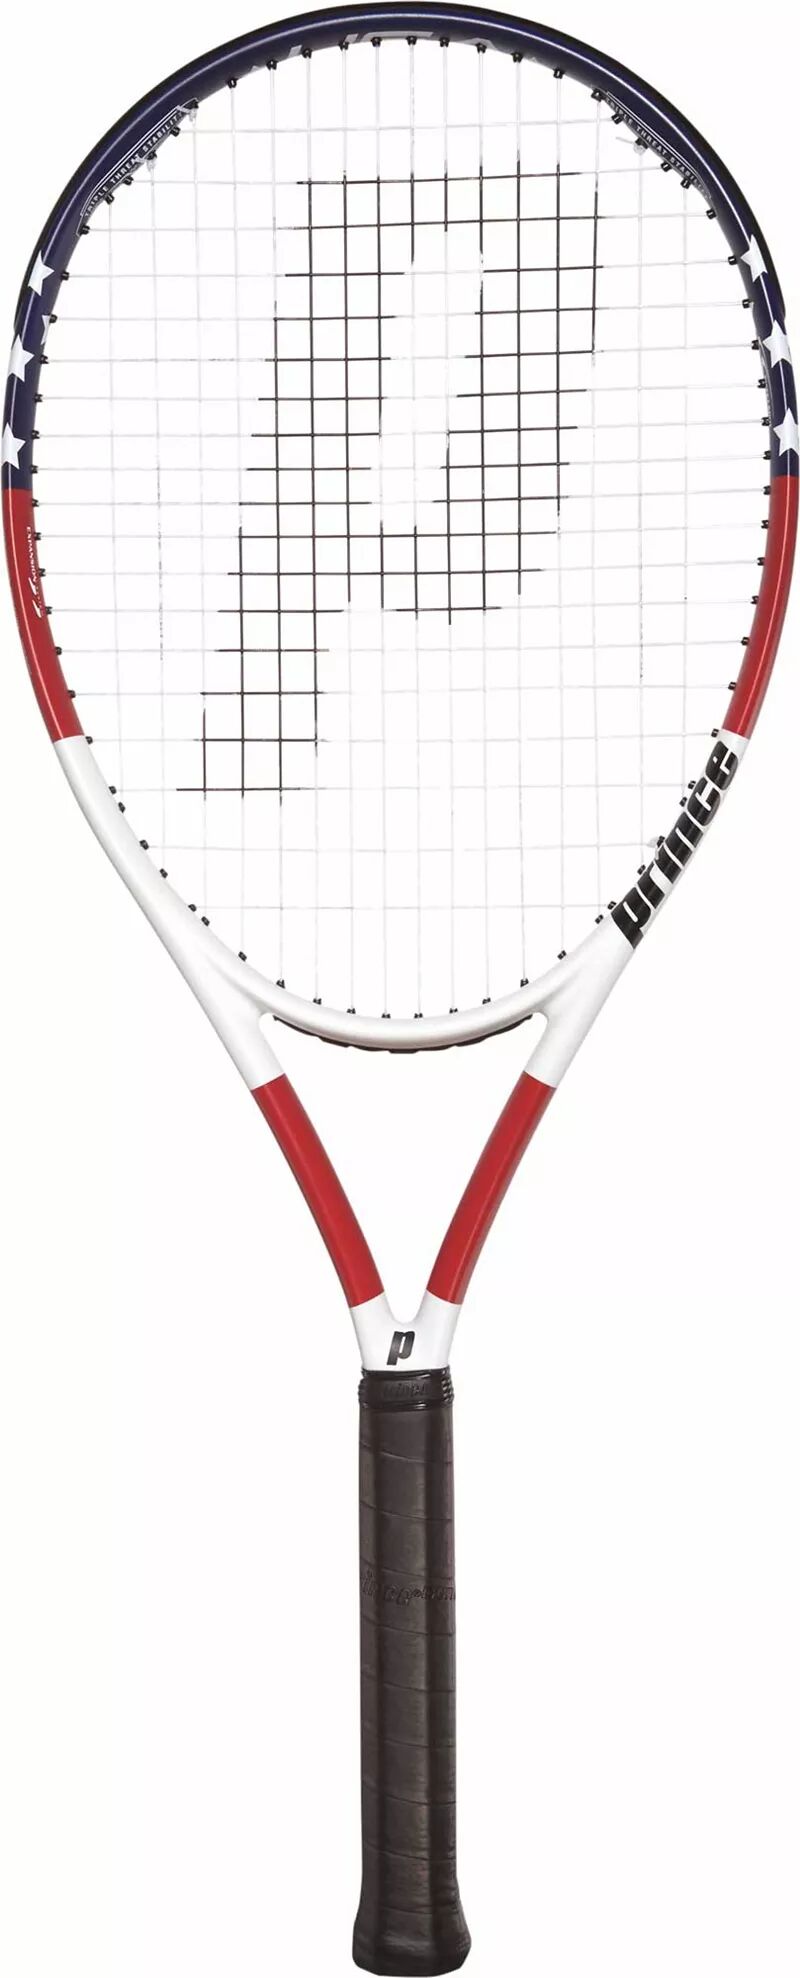 Теннисная ракетка Prince USA профессиональная углеродная ракетка 3k 16k мягкая теннисная ракетка для лица из эва с чехлом для мужчин и женщин тренировочные аксессуары